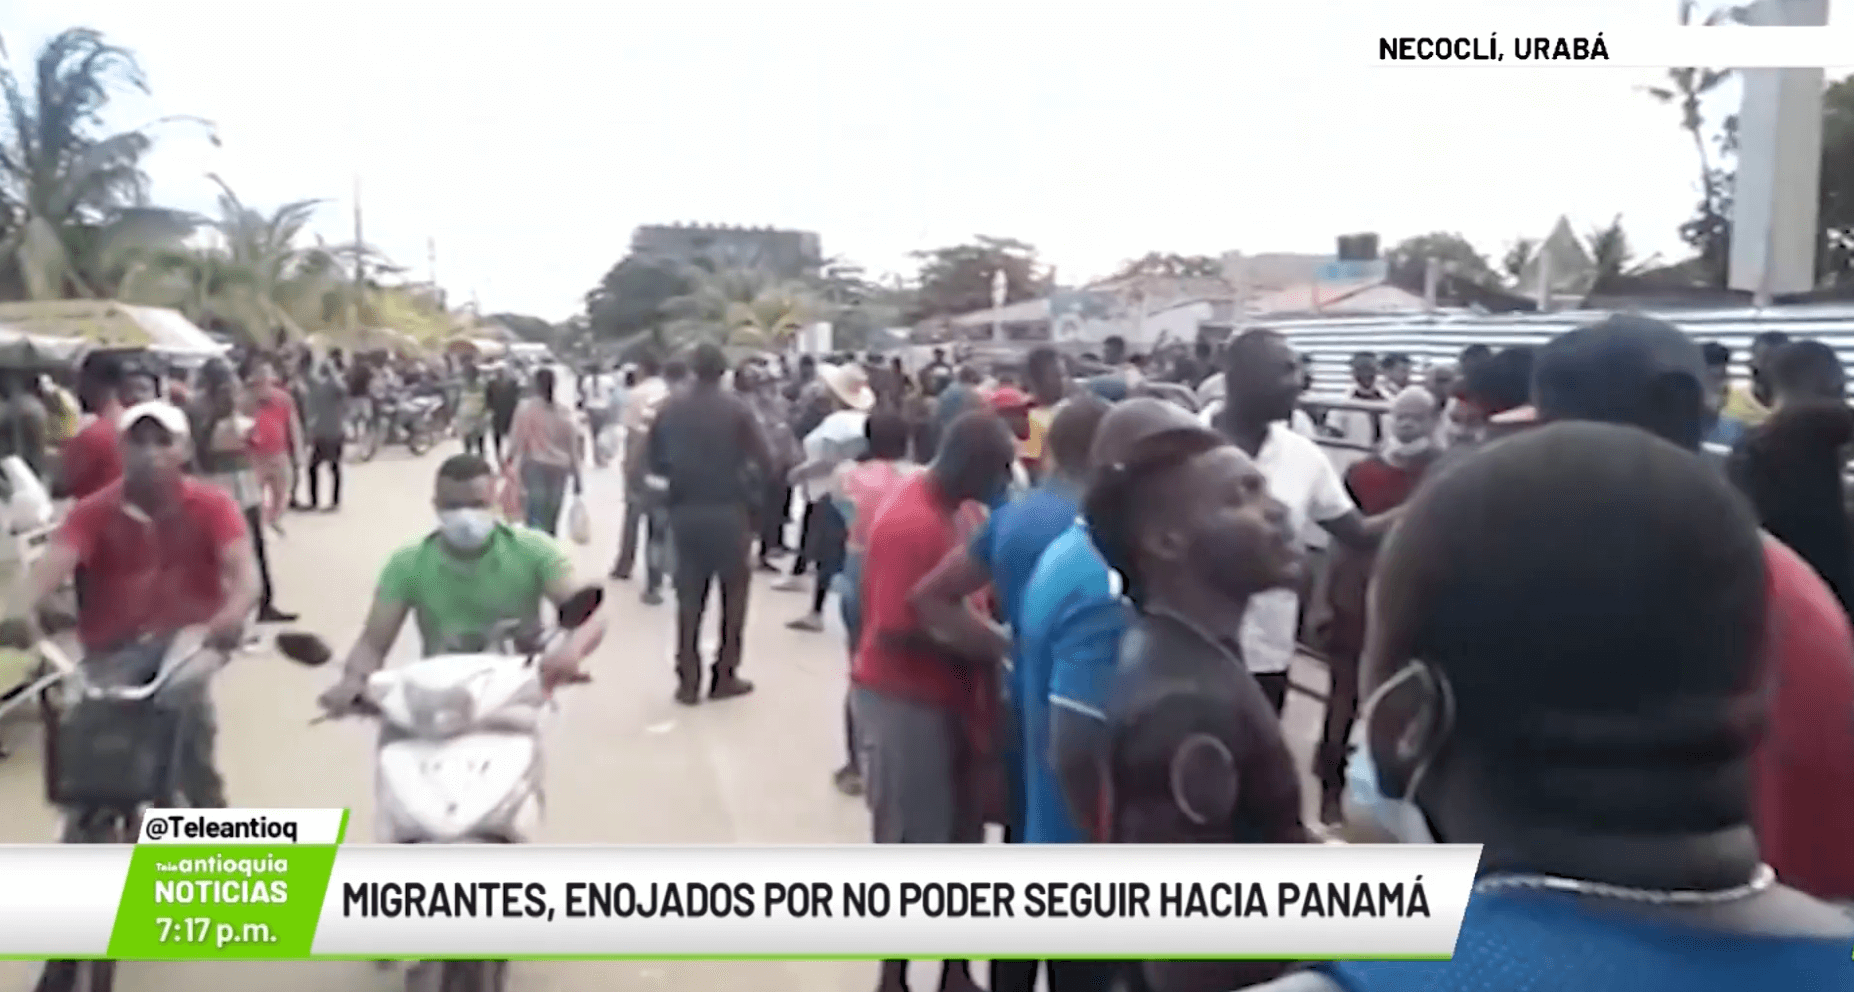 Migrantes enojados por no poder seguir hacia Panamá